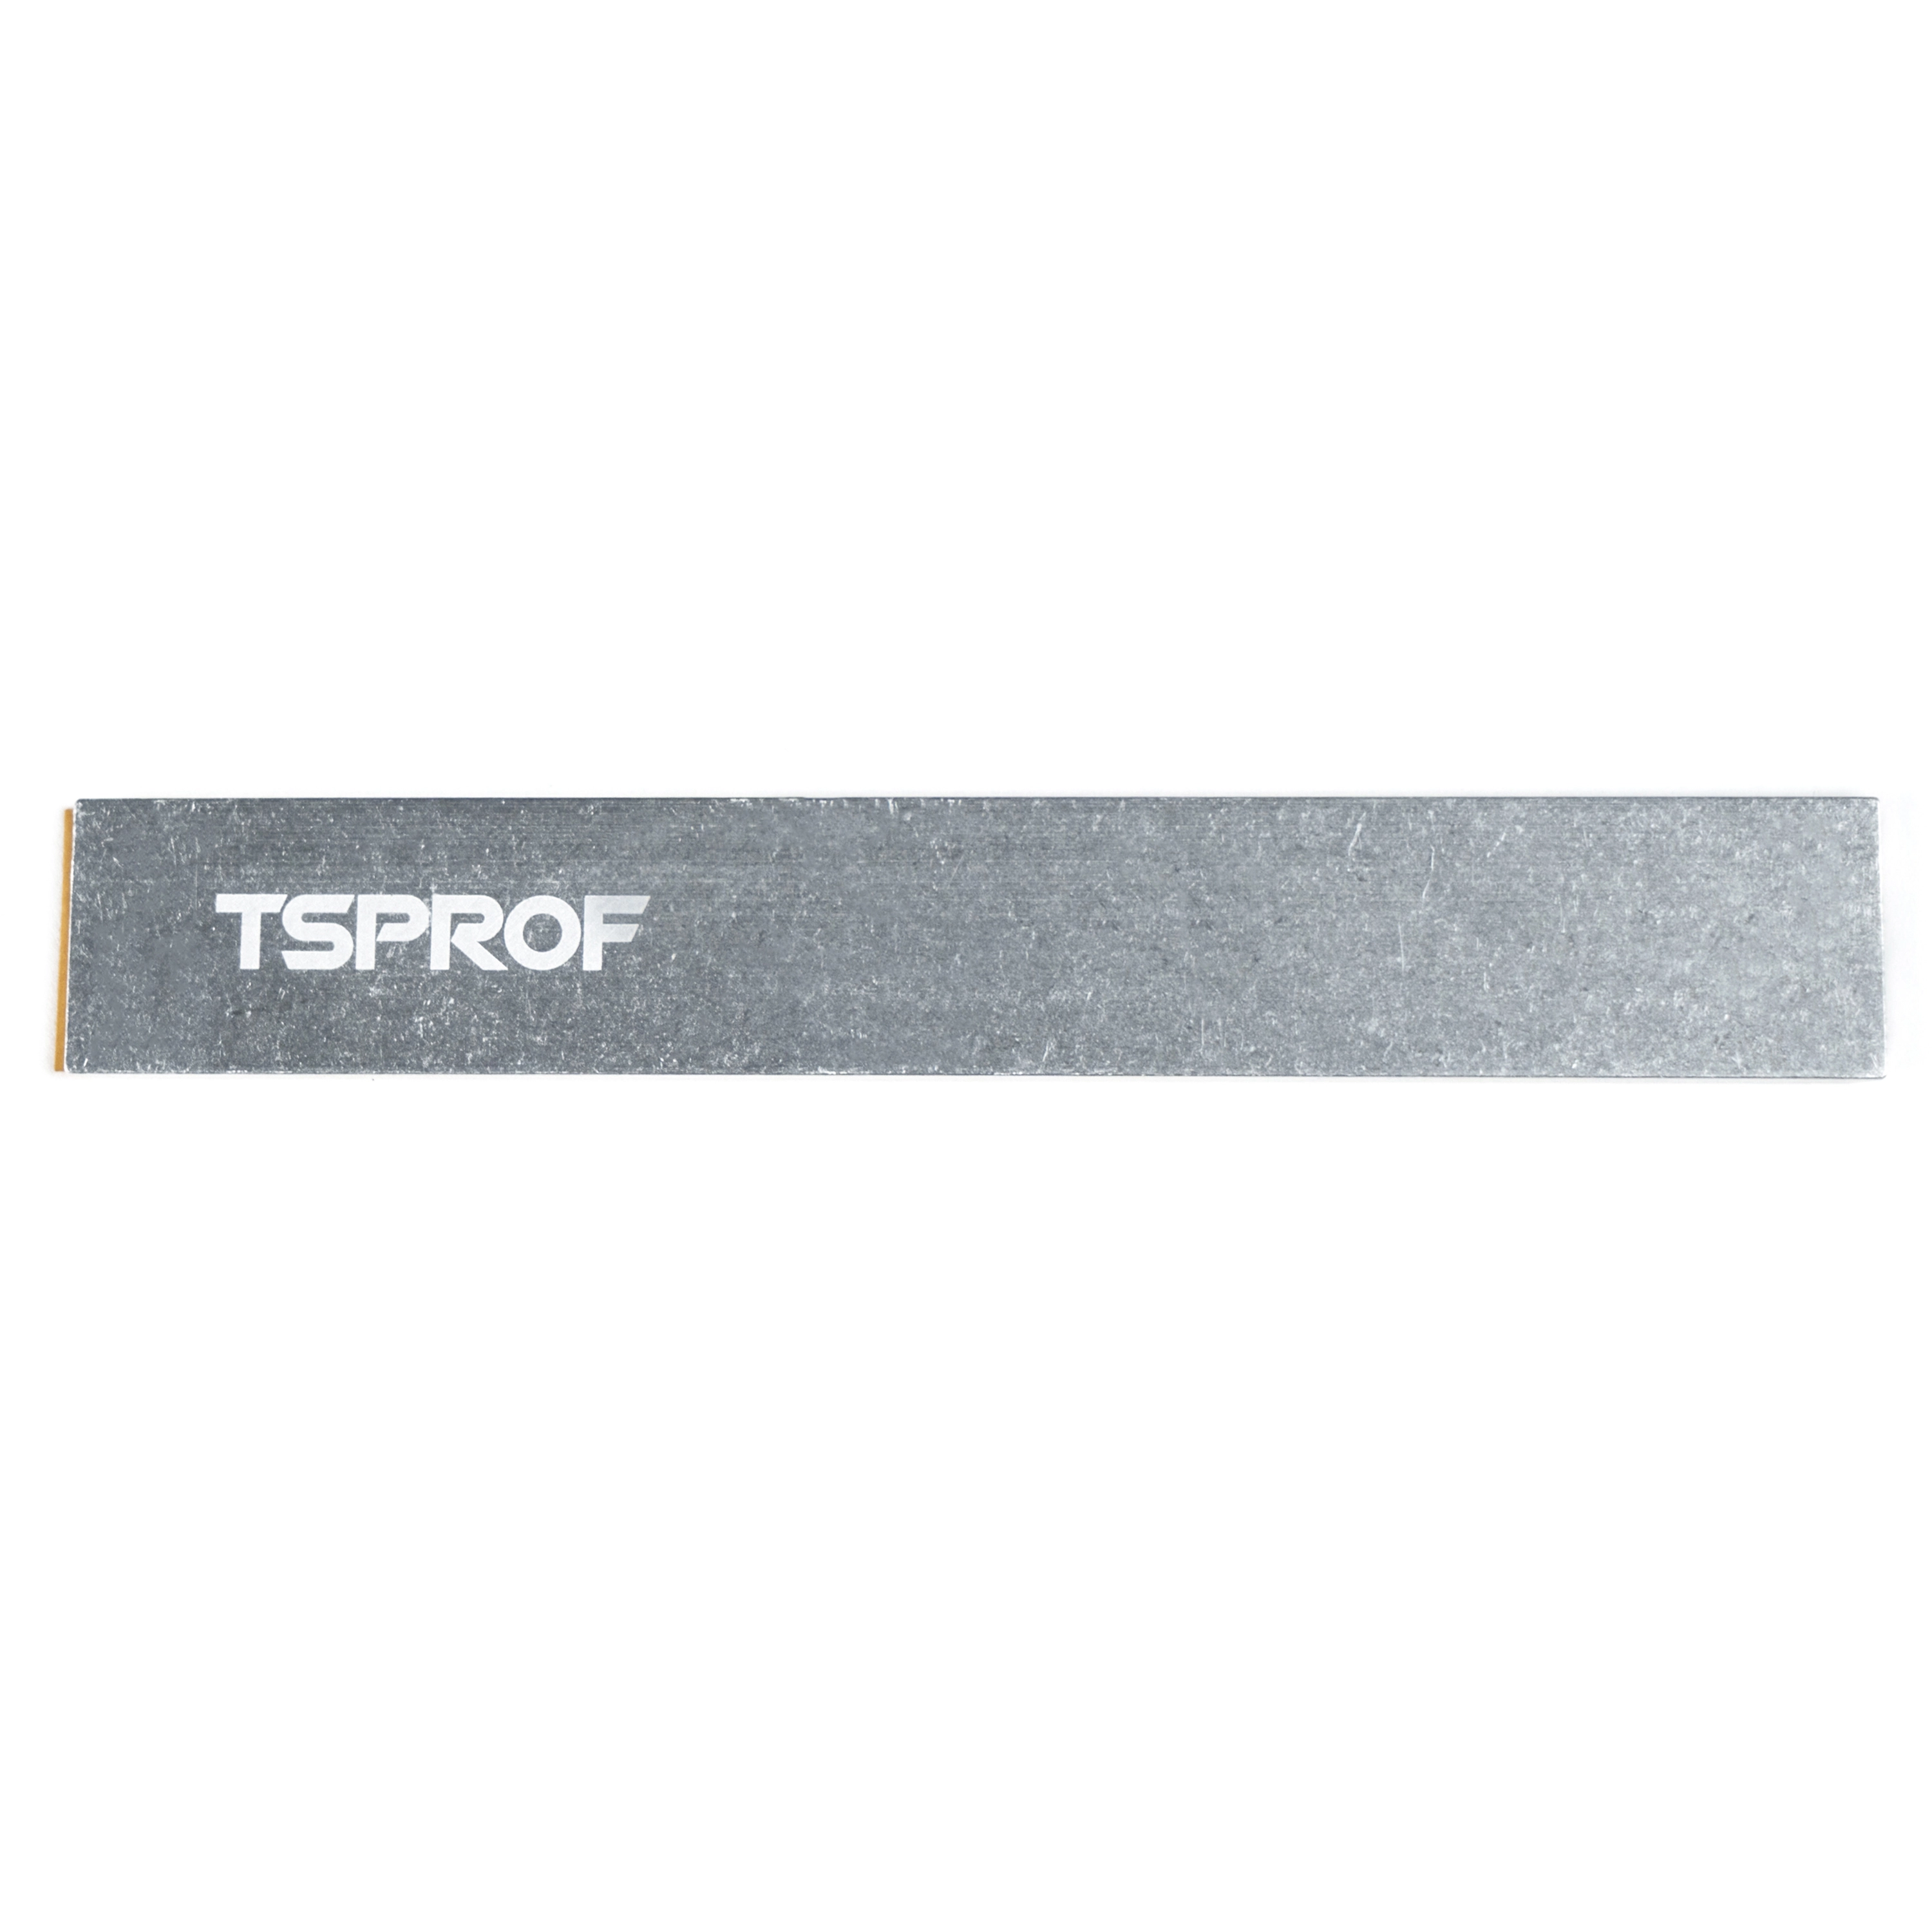 фото Бланк алюминиевый TSPROF, с клейкой основой на ytprof.ru